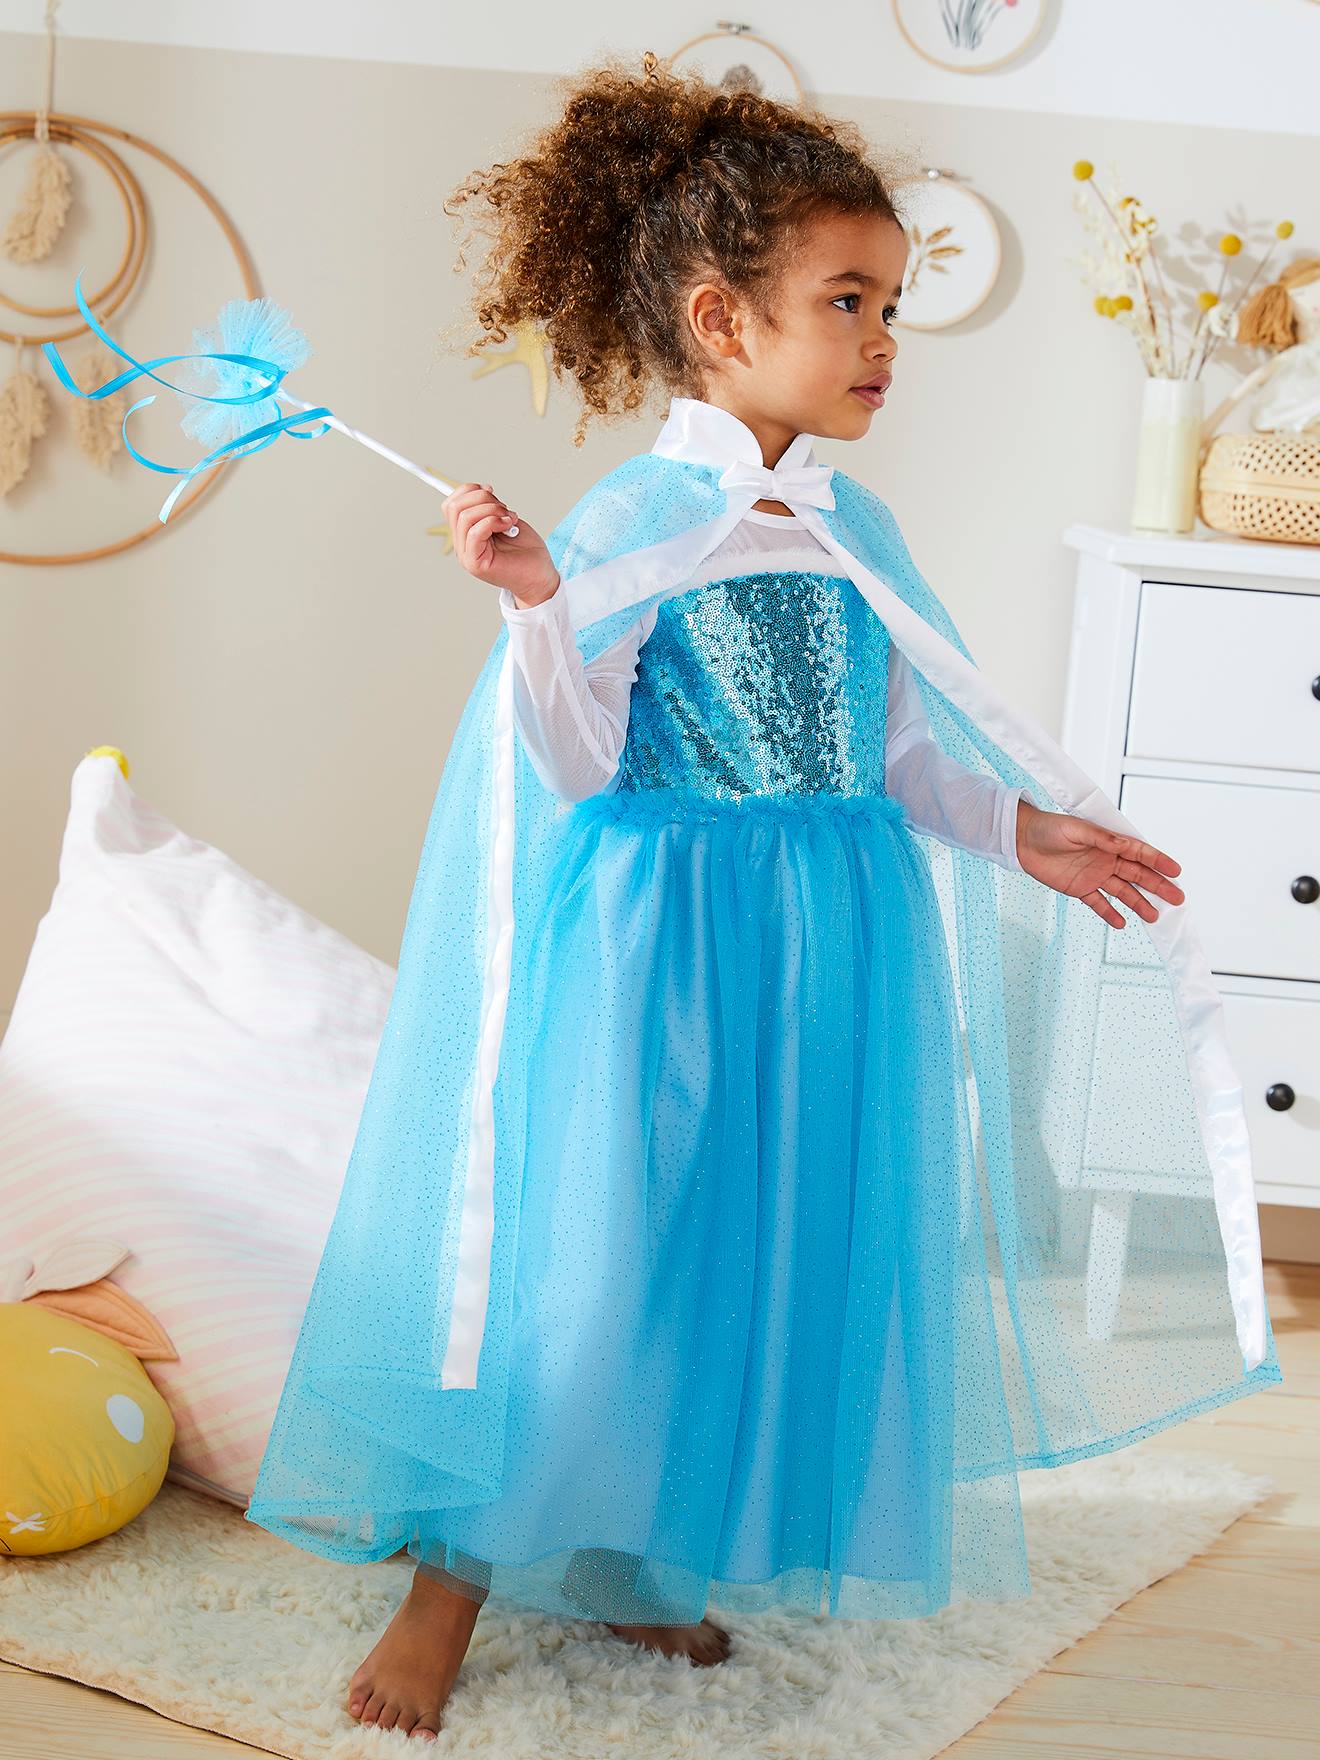 Déguisement Princesse nuage enfant - Bleu - Kiabi - 23.90€